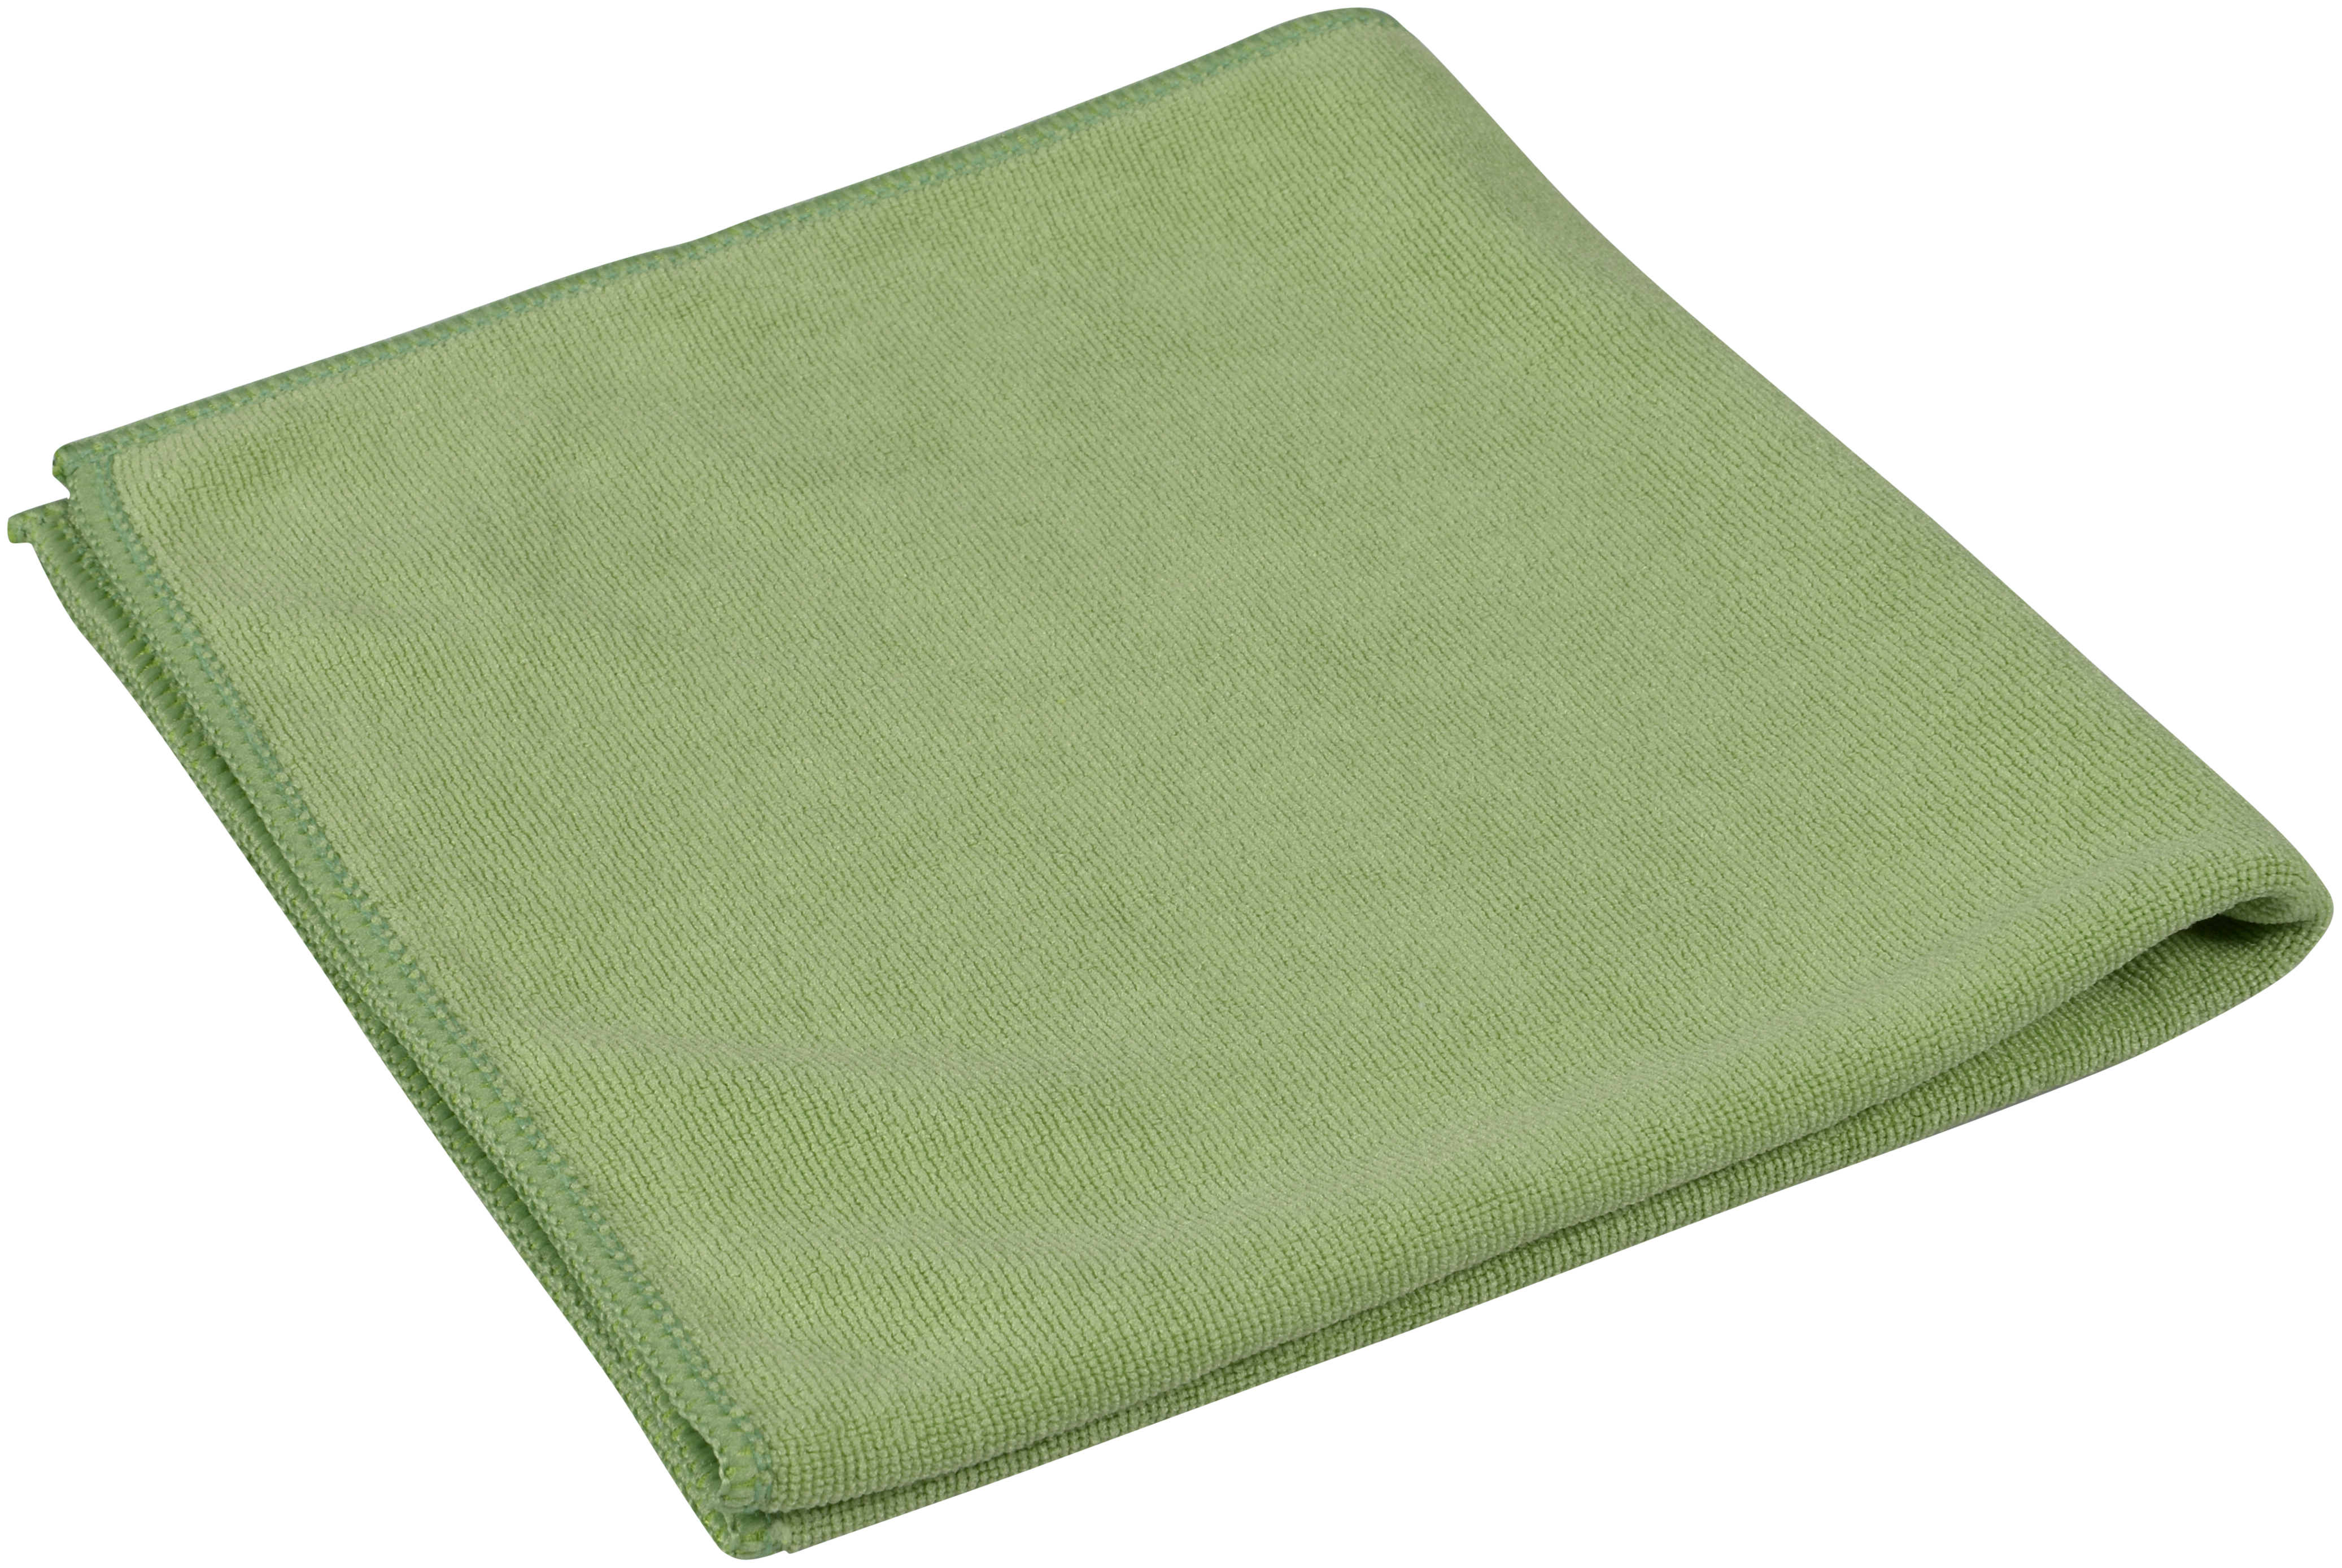 Microfasertuch Premium, ENA Soft, grün, 40 x 40 cm, 375 g/m², 10 Stück/Packung